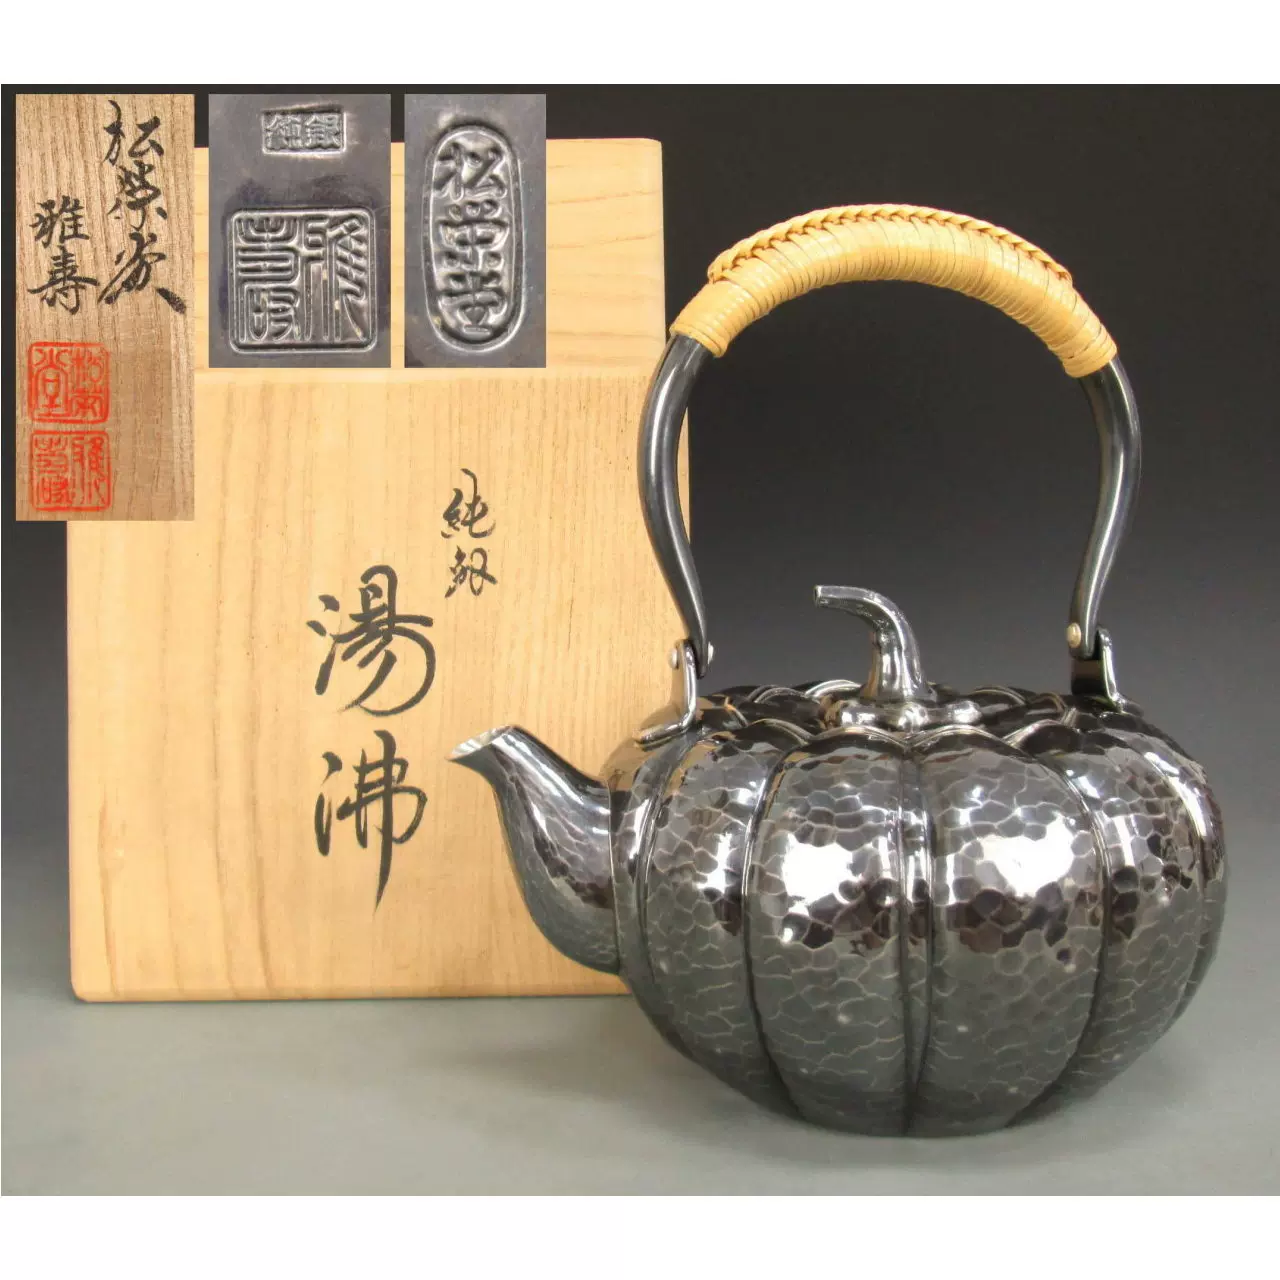 日本鬆榮堂純銀製手工錘目南瓜形湯沸雅壽作共箱銀壺茶道具-Taobao